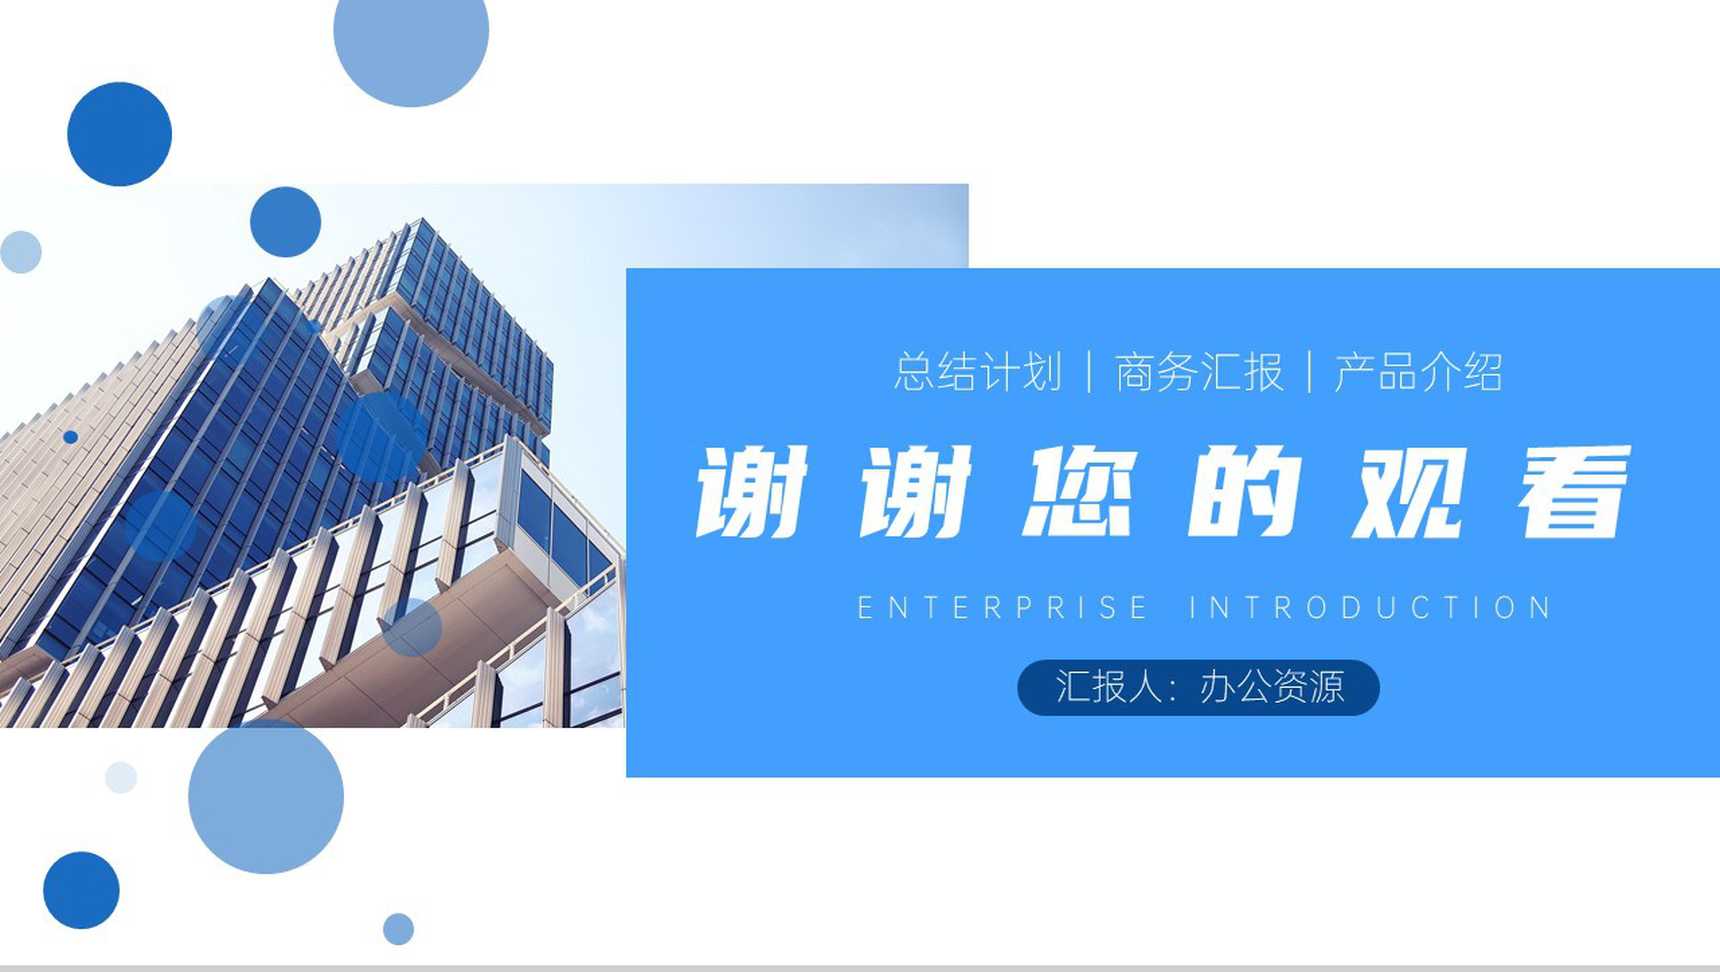 蓝白简约商务背景建筑公司企业介绍PPT模板-10